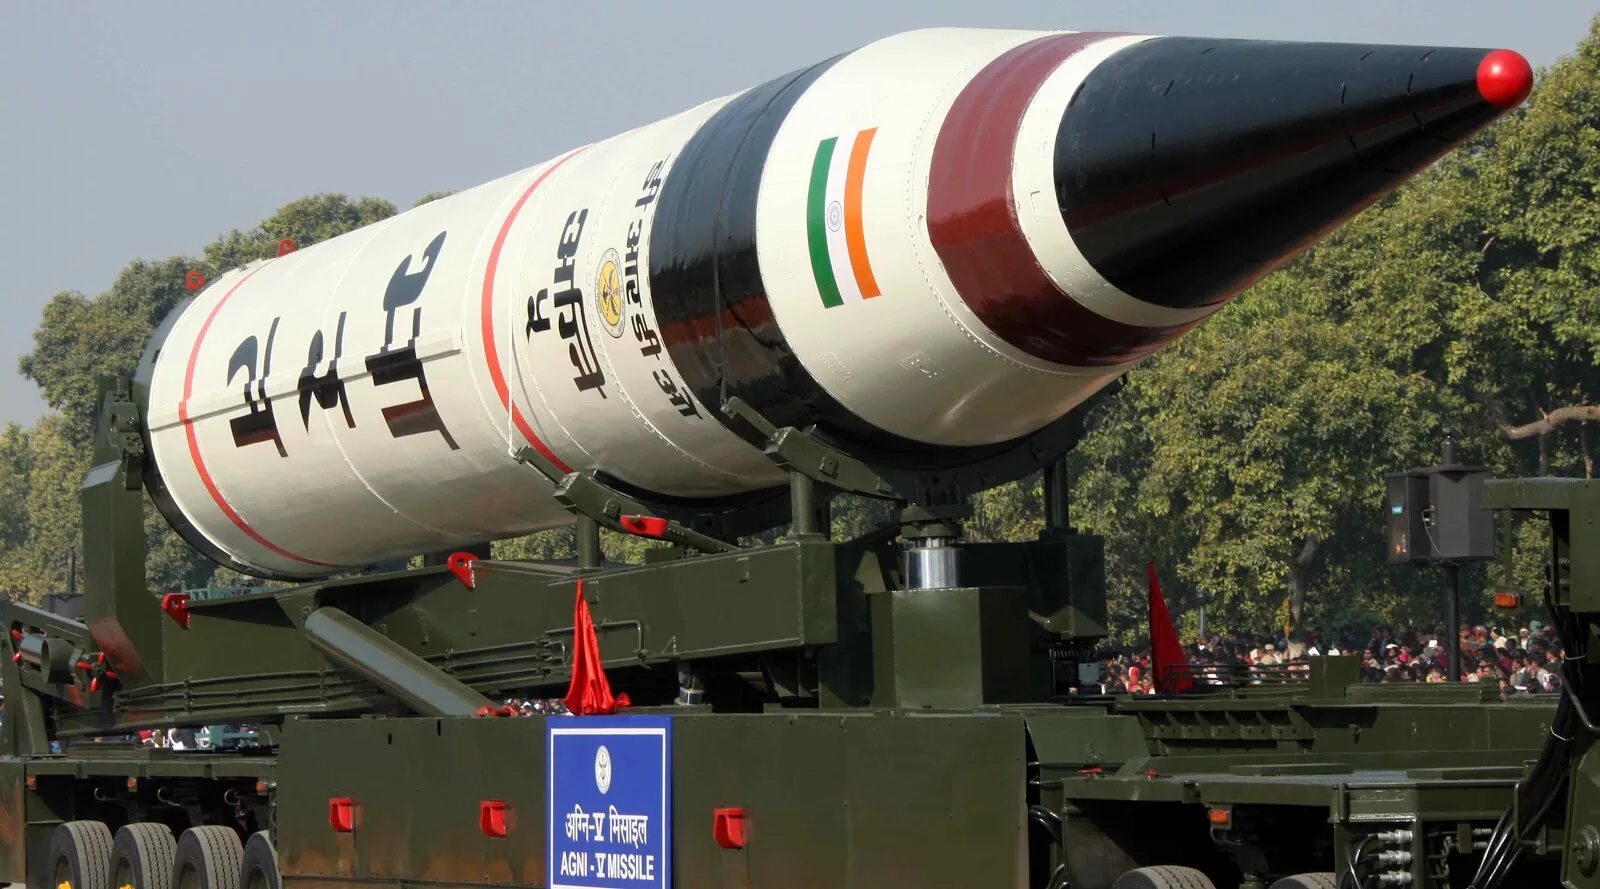 Название ядерного оружия сша. Агни-v баллистическая ракета. Индийские баллистические ракеты. Agni 5 ракета. Ядерное оружие Индии.